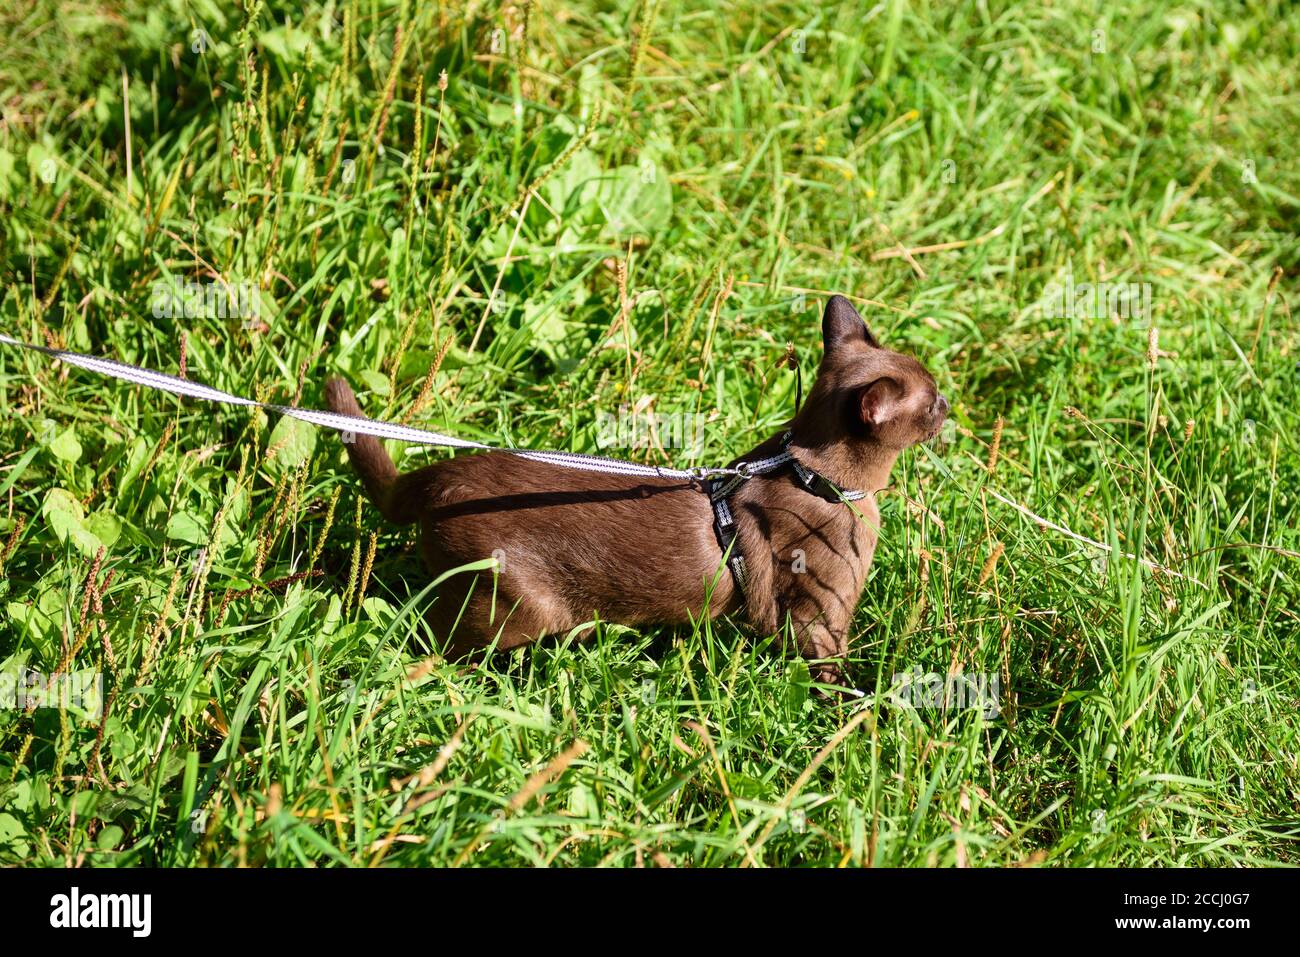 Gato birmano con correa caminando fuera. Mascota en collar vagando aventura al aire libre en el parque o el jardín. Burma gato usando arnés va sobre hierba verde en s Foto de stock